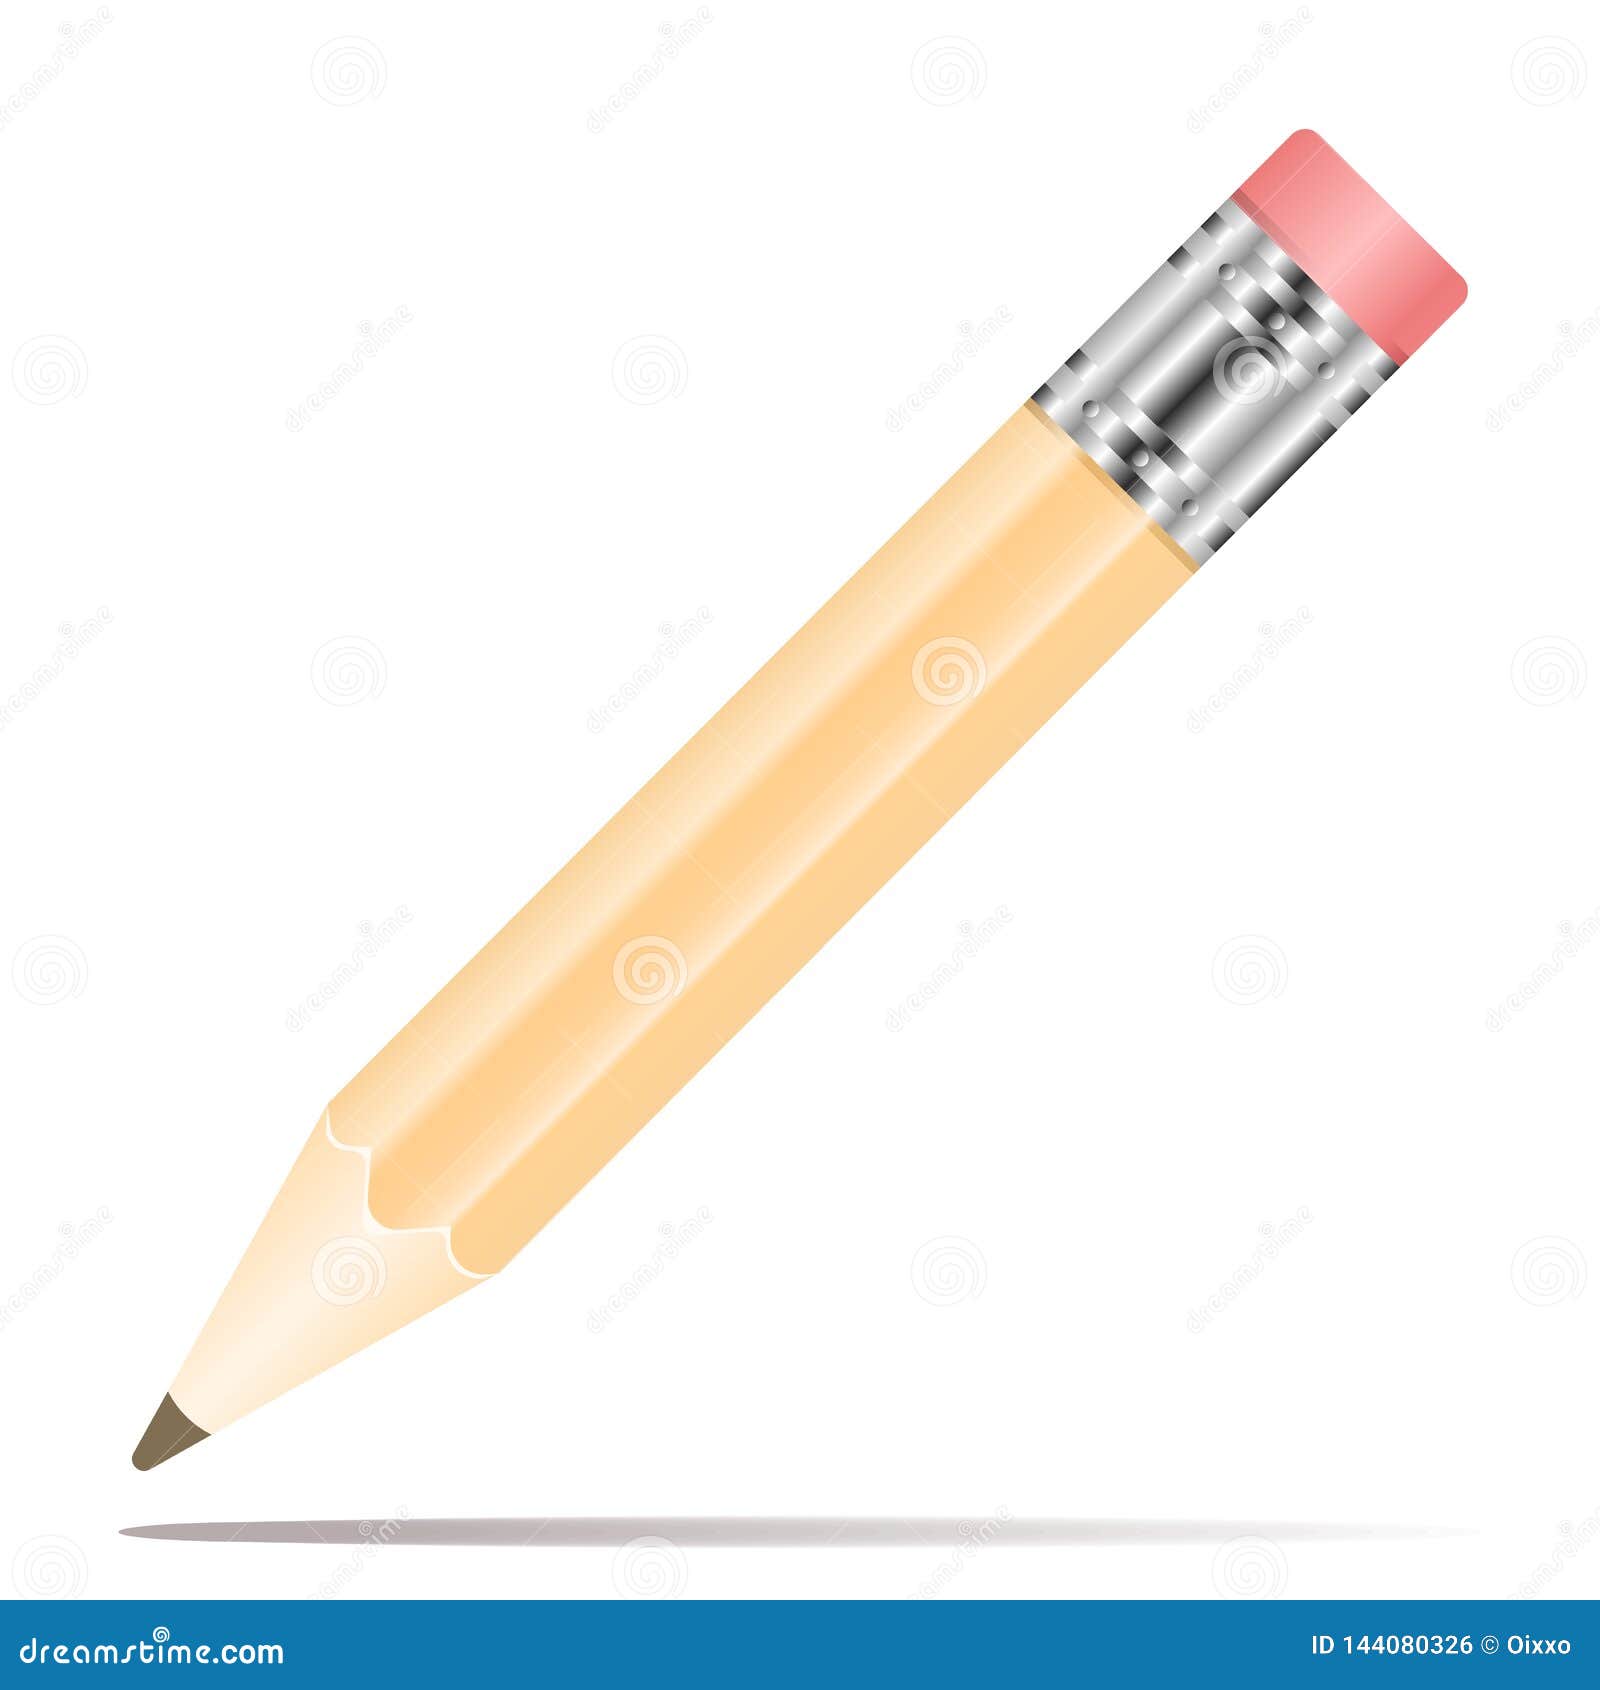 Εικονίδιο μολυβιών στο επίπεδο σχέδιο r Μολύβι στο άσπρο υπόβαθρο με τη σκιά. Επίπεδο σχέδιο εικονιδίων μολυβιών r Μολύβι στο άσπρο υπόβαθρο με τη σκιά